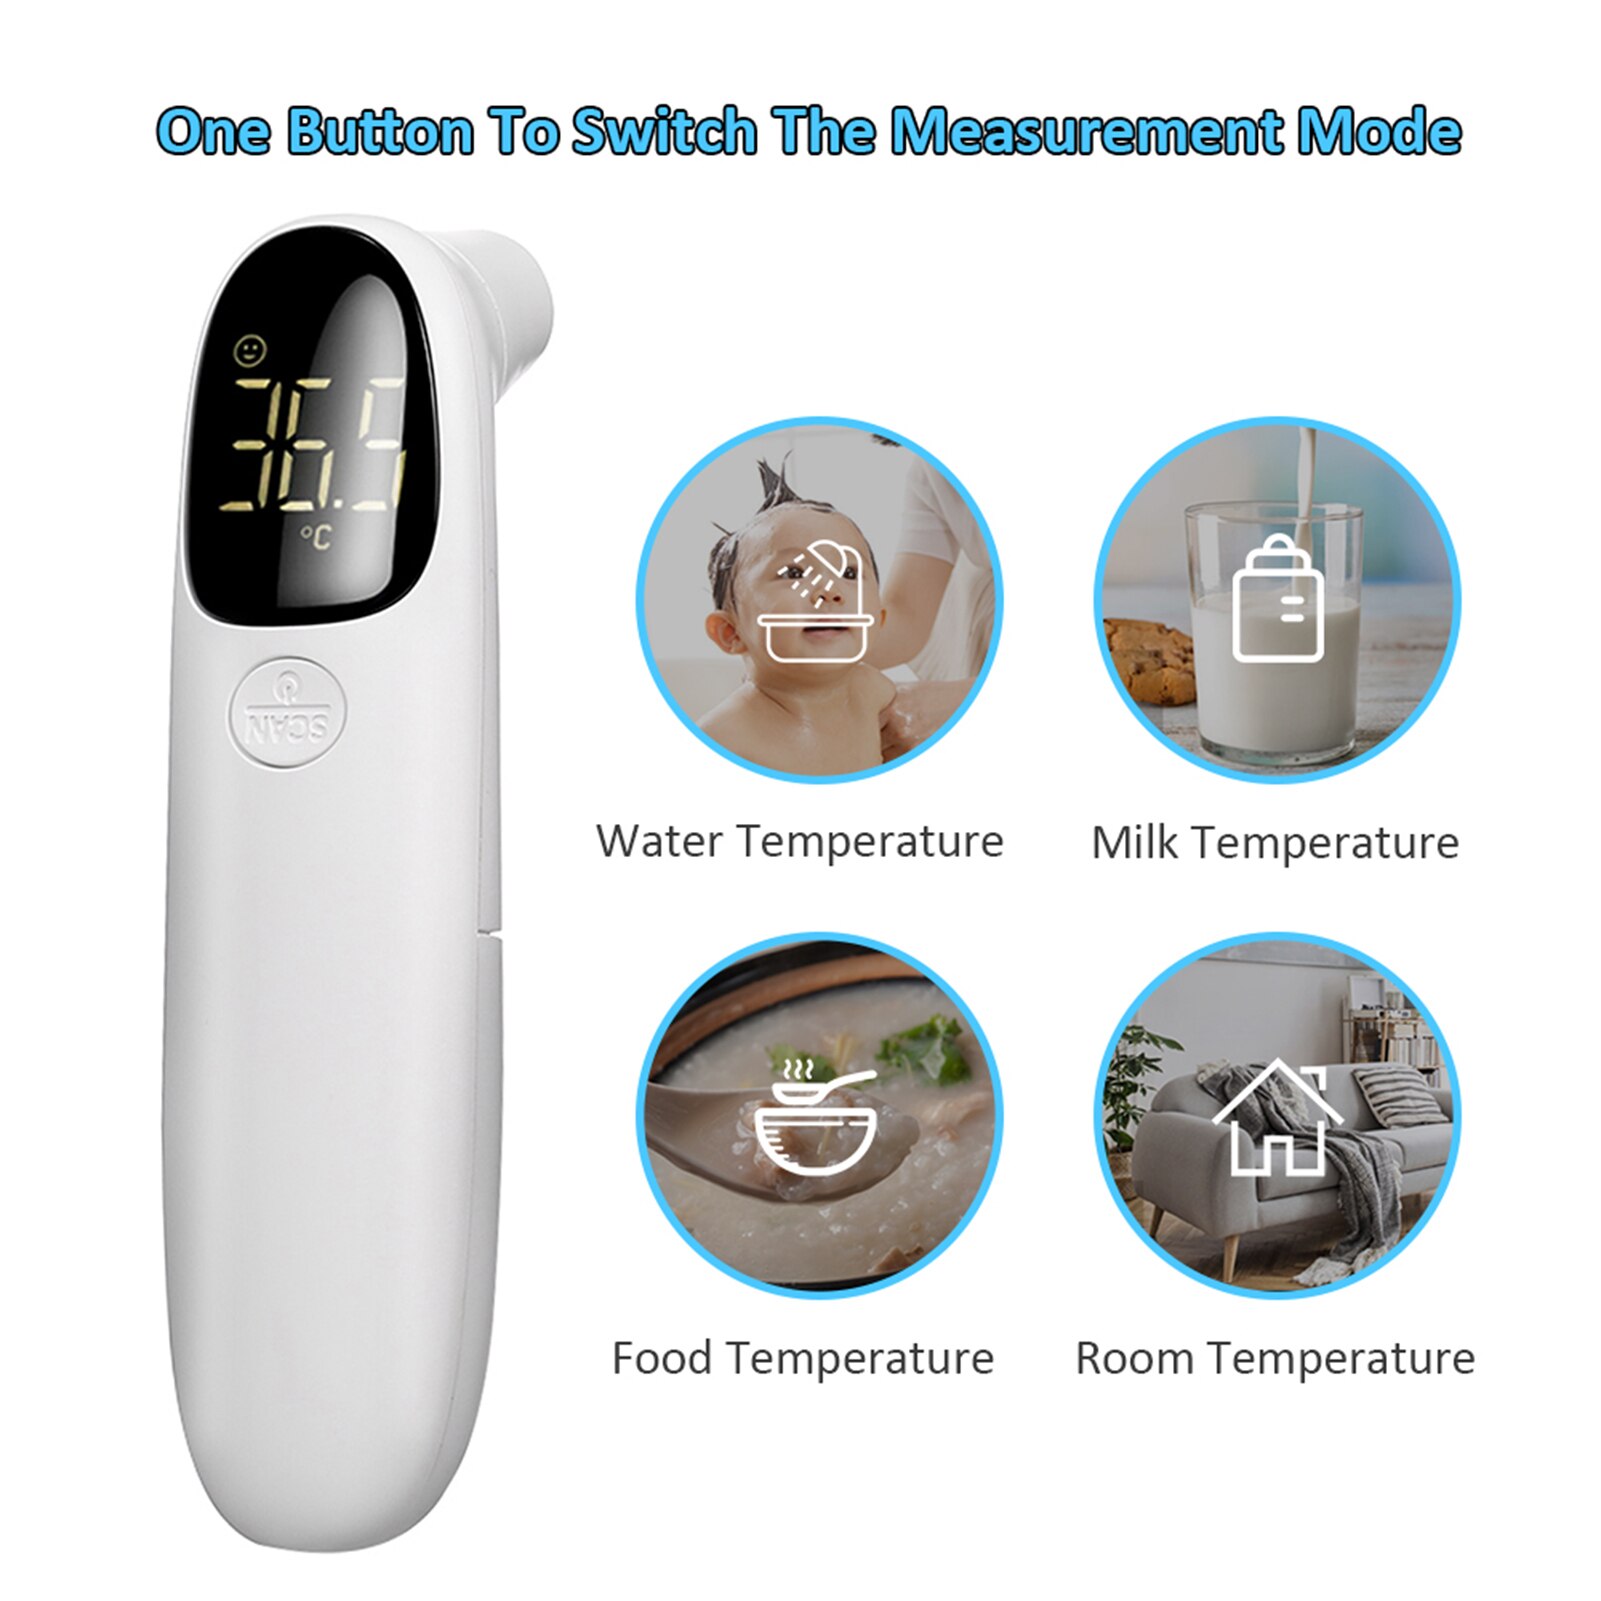 Não-contato termômetro febre termômetro infravermelho lcd display digital temperatura medida ferramentas ir termômetros para o bebê crianças